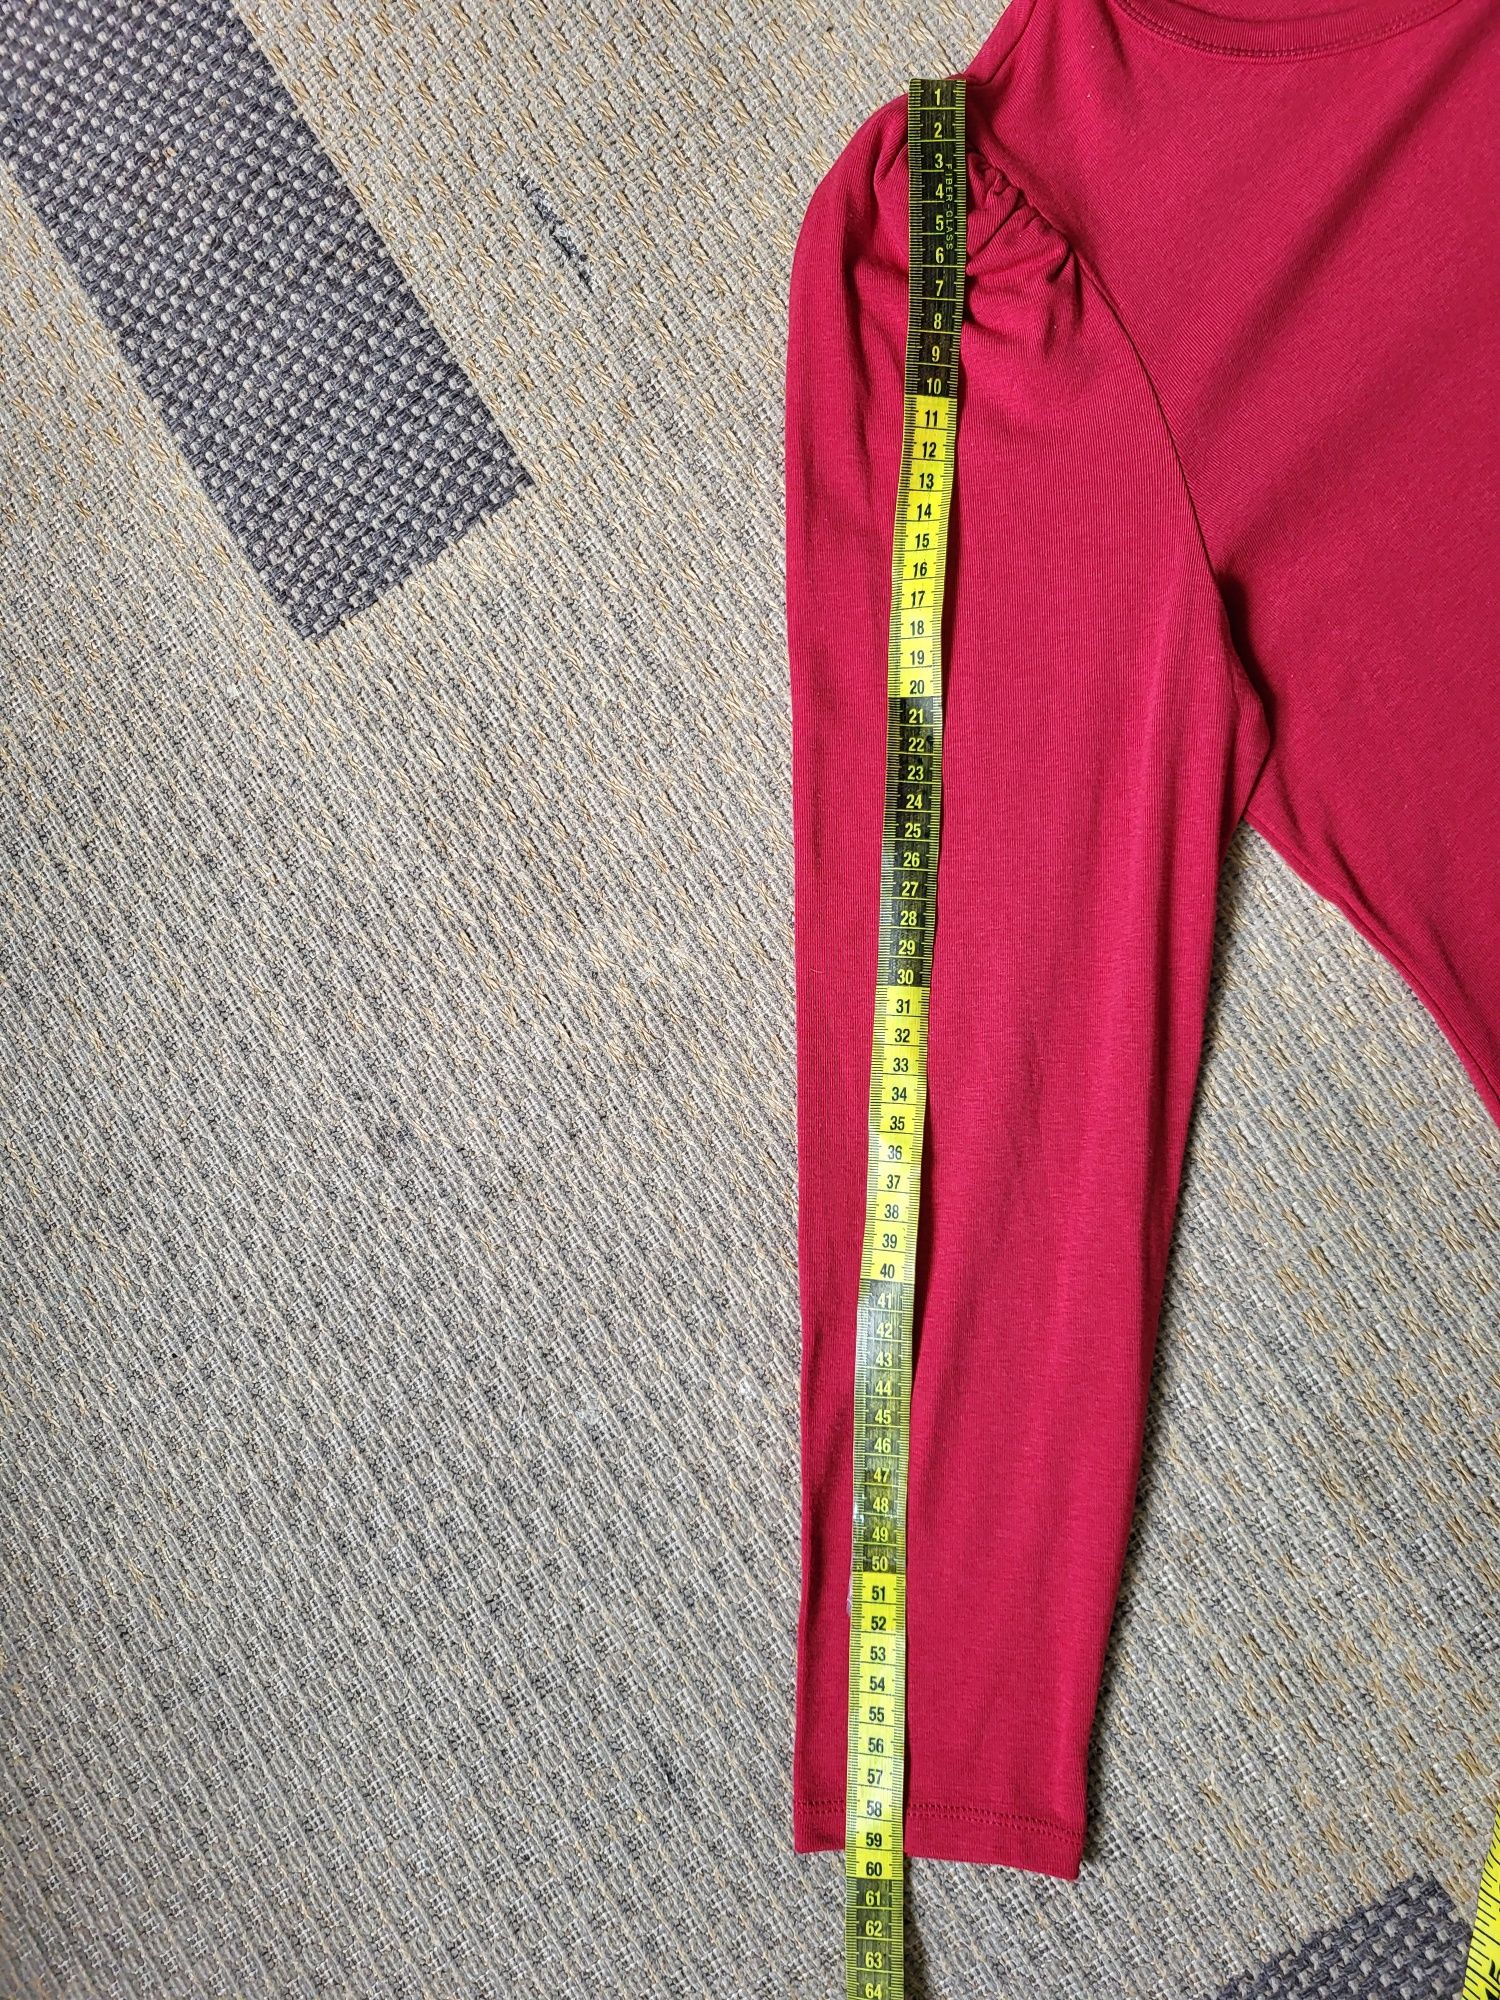 Bluză top roșu cu mânecă lungă măsura M